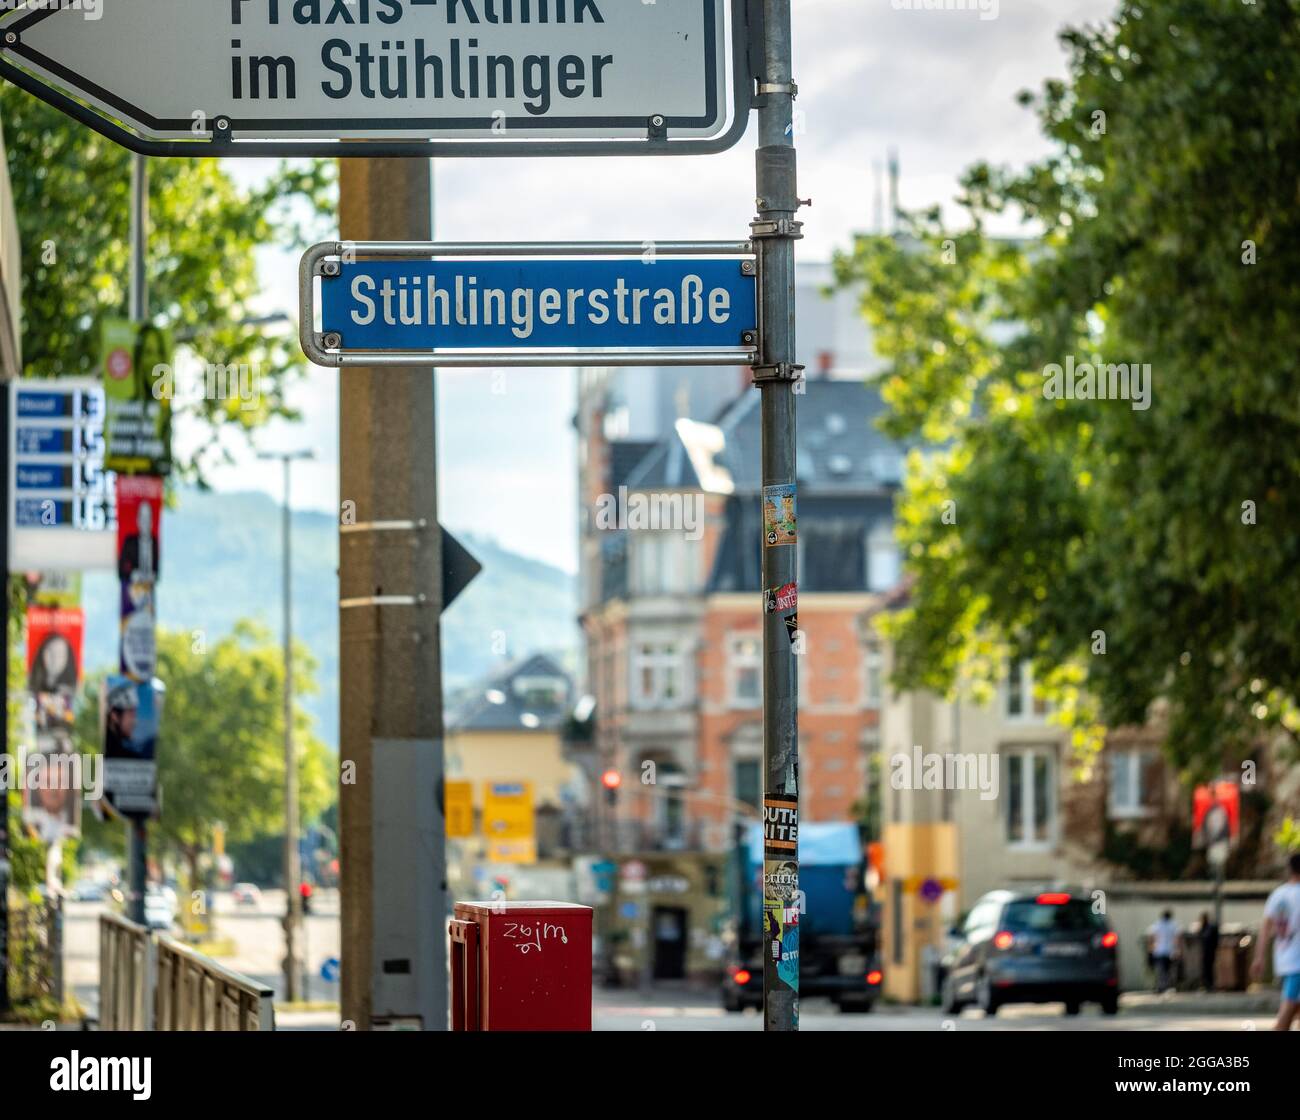 Traffico e indicazioni stradali per District Stühlinger a Friburgo Foto Stock